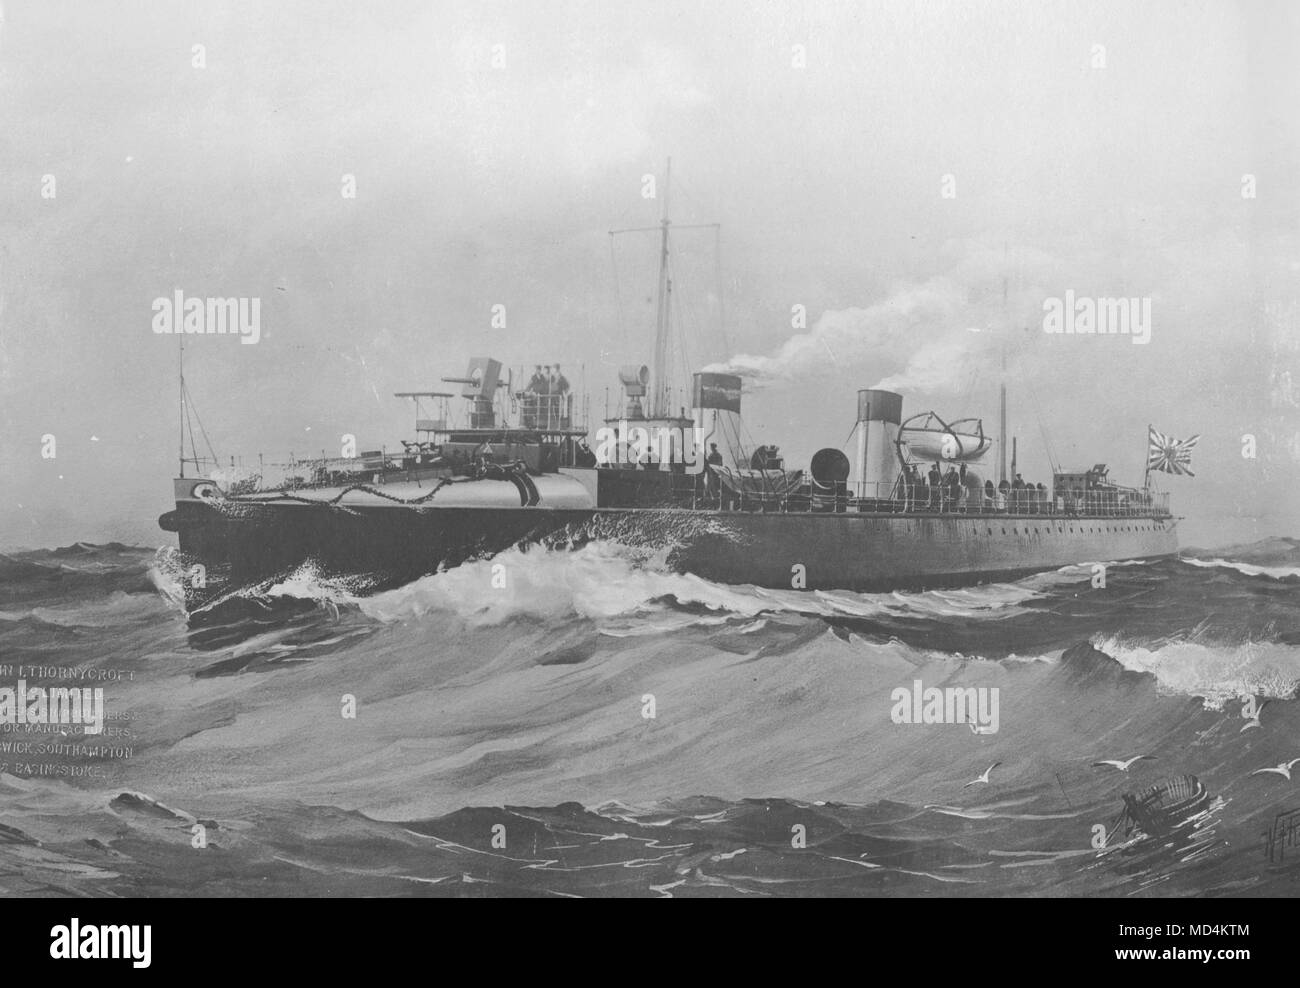 AJAXNETPHOTO. 1900. En el mar. - Destructor imperial japonés USUGUMO - la primera embarcación para alcanzar la velocidad de 31 nudos. Construido por J. THORNYCROFT en 1900. 210 pies de longitud, el desplazamiento de 285 toneladas. Buque tomó parte destacada en el bombardeo de Port Arthur y fue muy elogiado. Foto:VT/AJAXNETPHOTO colección REF:AVL NA USUGUMO VT1990 11 Foto de stock